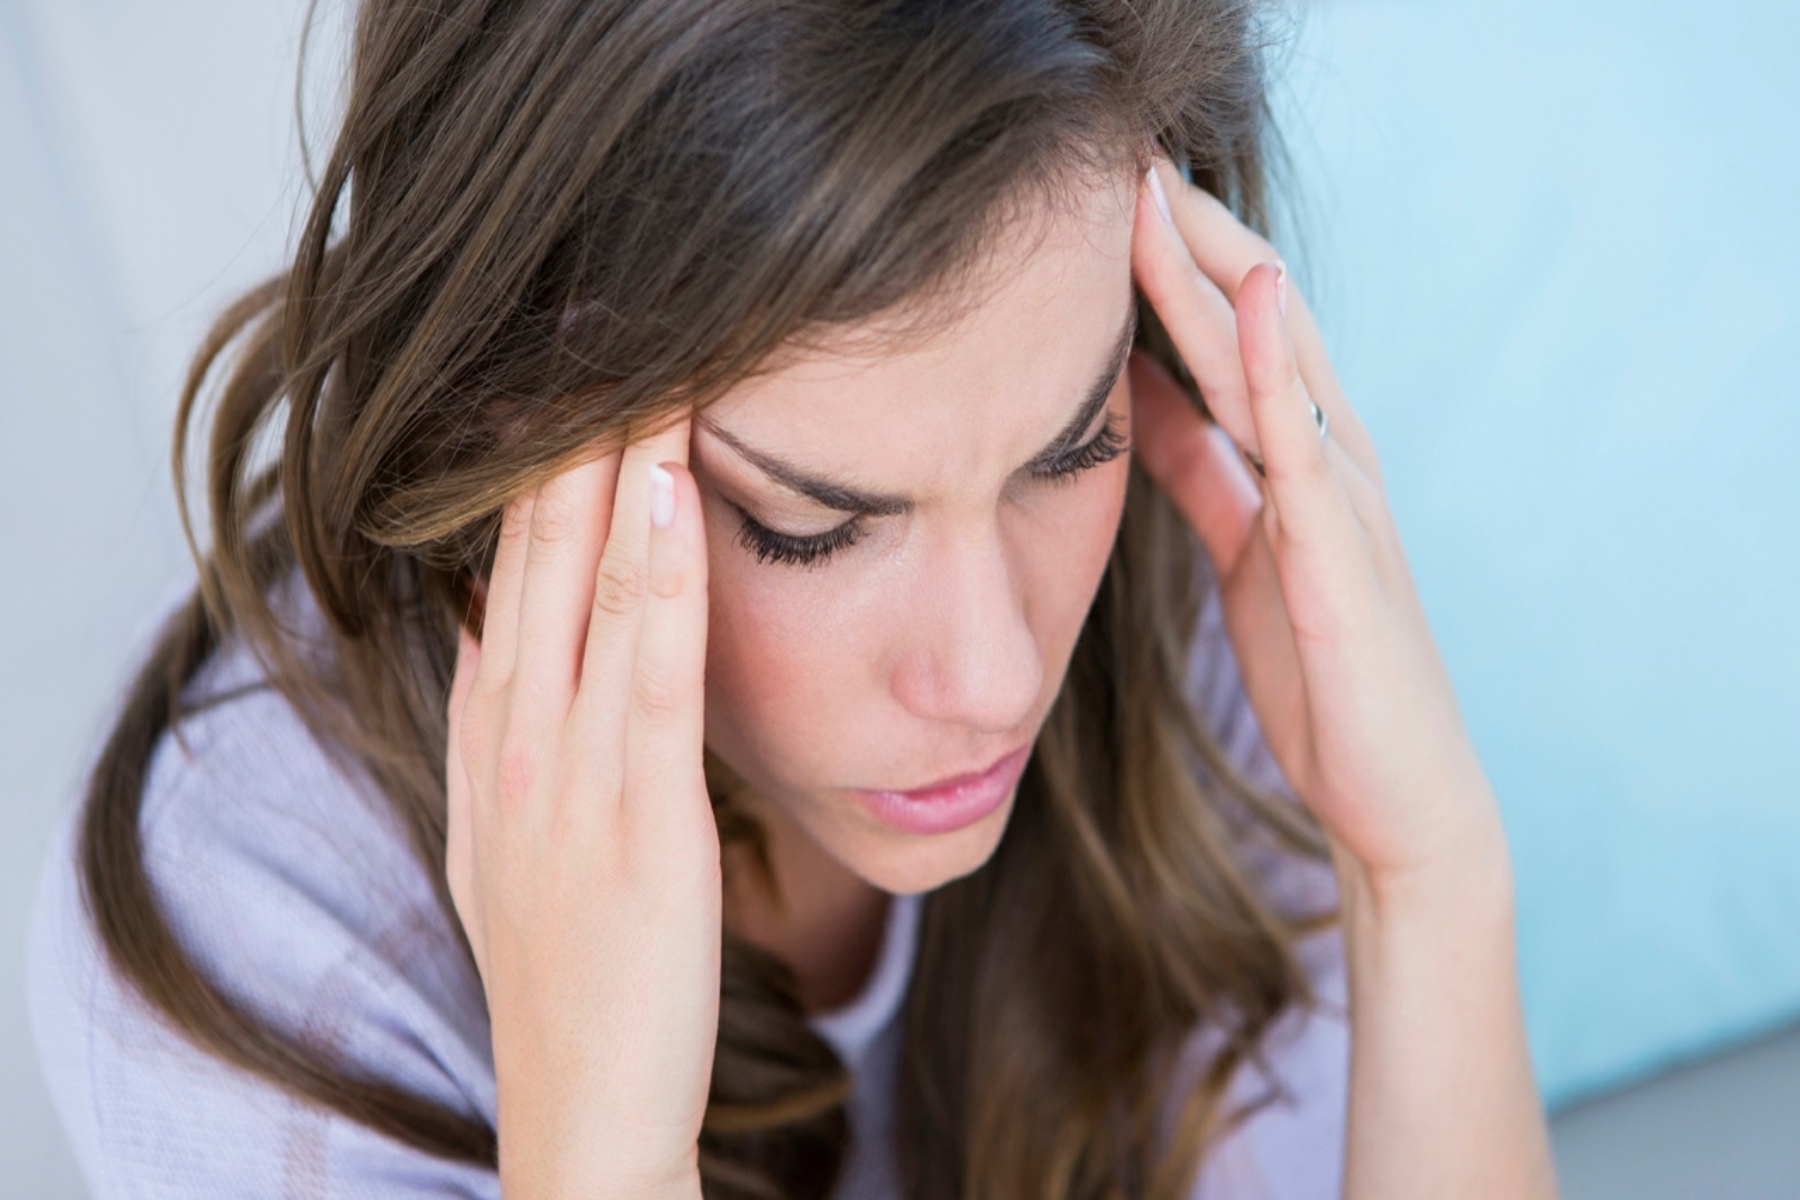 Πονοκέφαλος αυτοφροντίδα: Φυσικές μέθοδοι αντιμετώπισης του έντονου πόνου στο κεφάλι